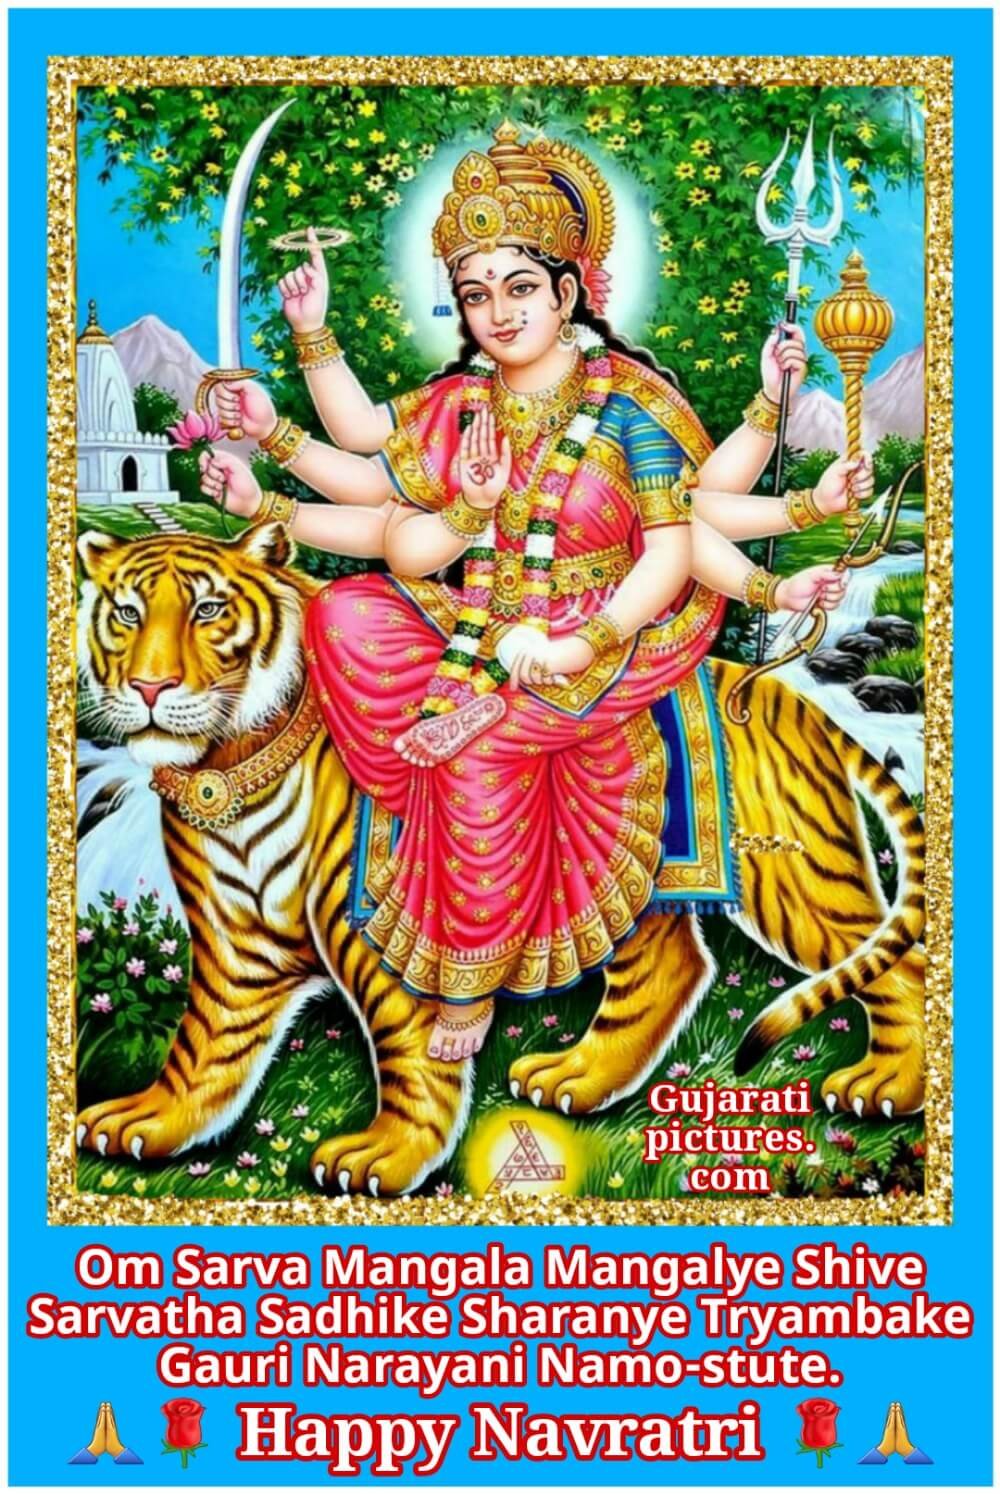 Devi Mantra, Navratri Image